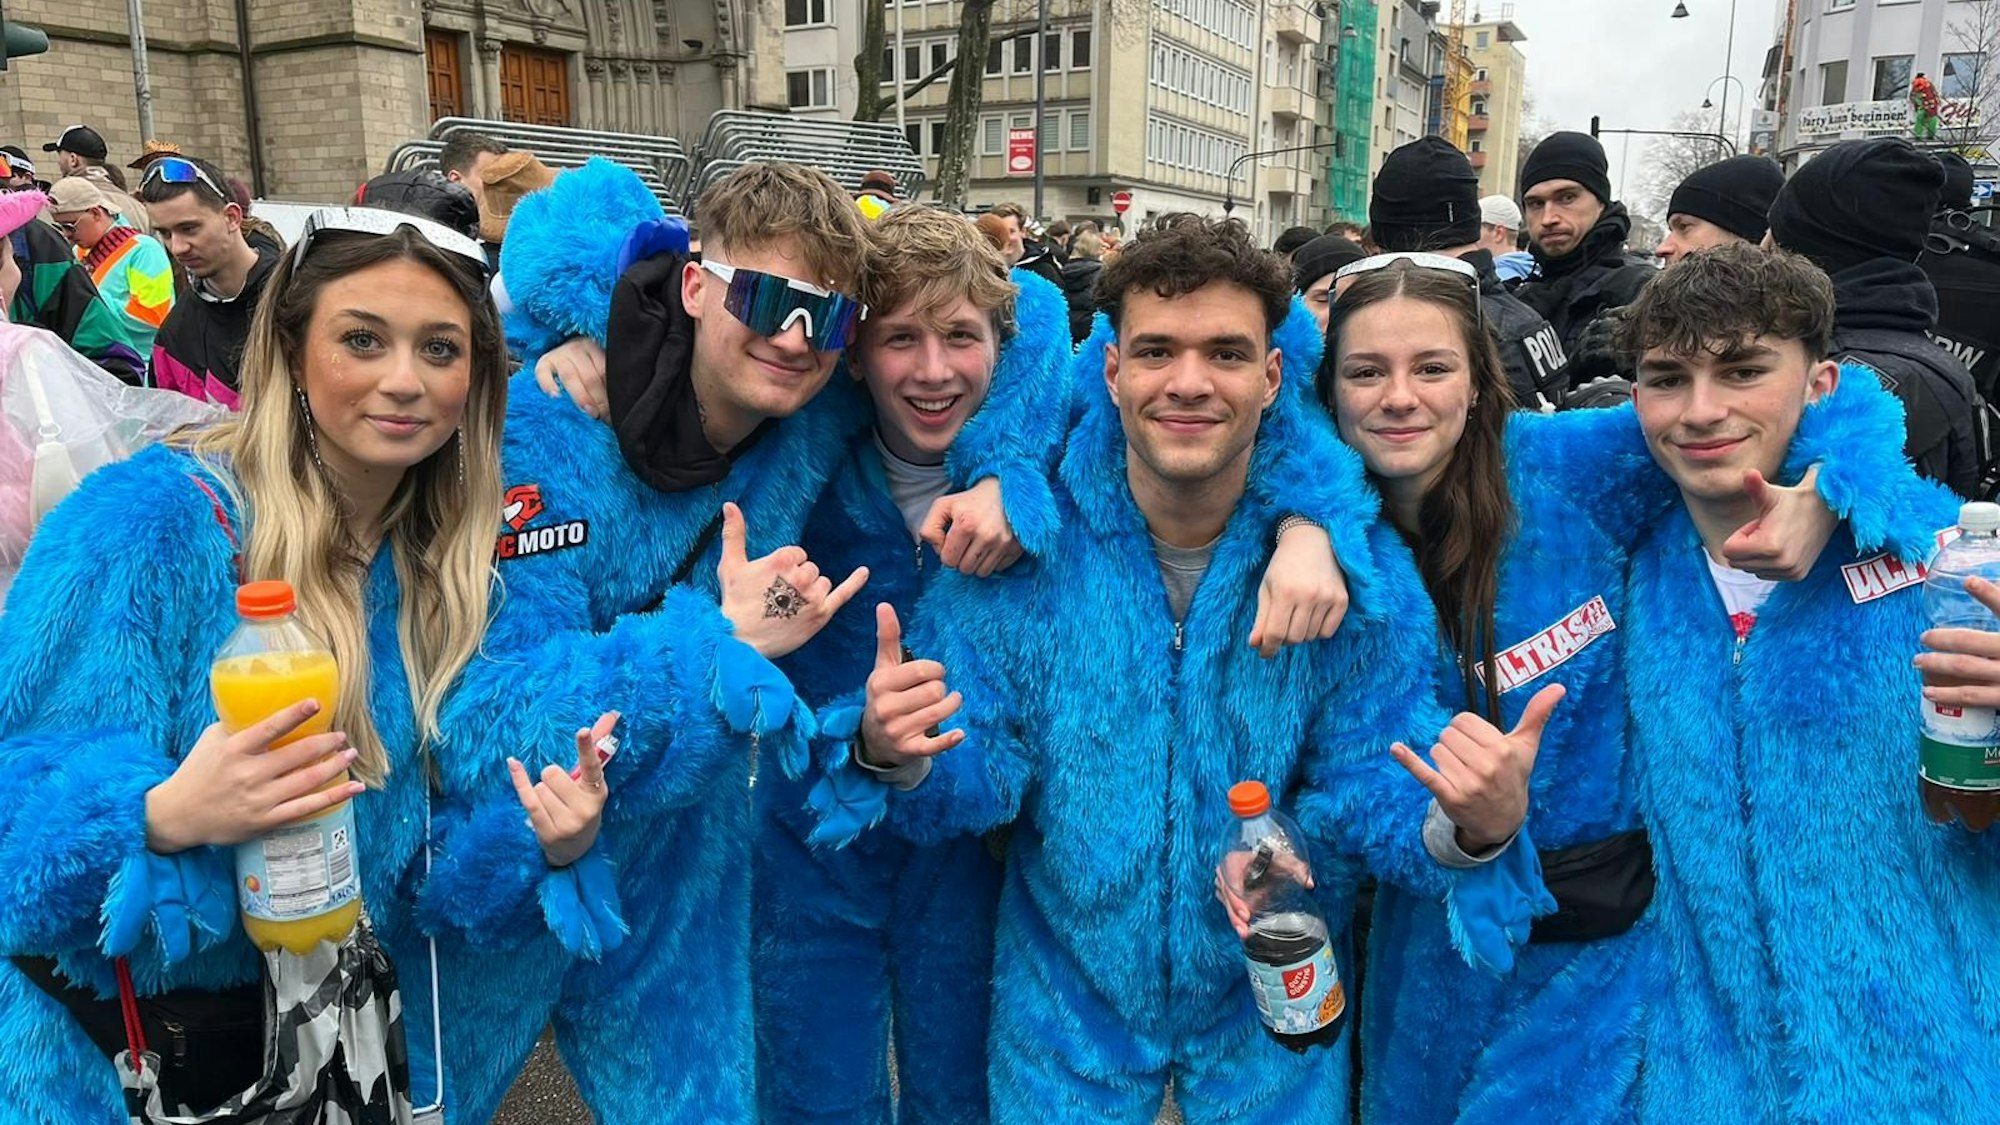 Sechs Menschen als Krümelmonster verkleidet im Karneval.